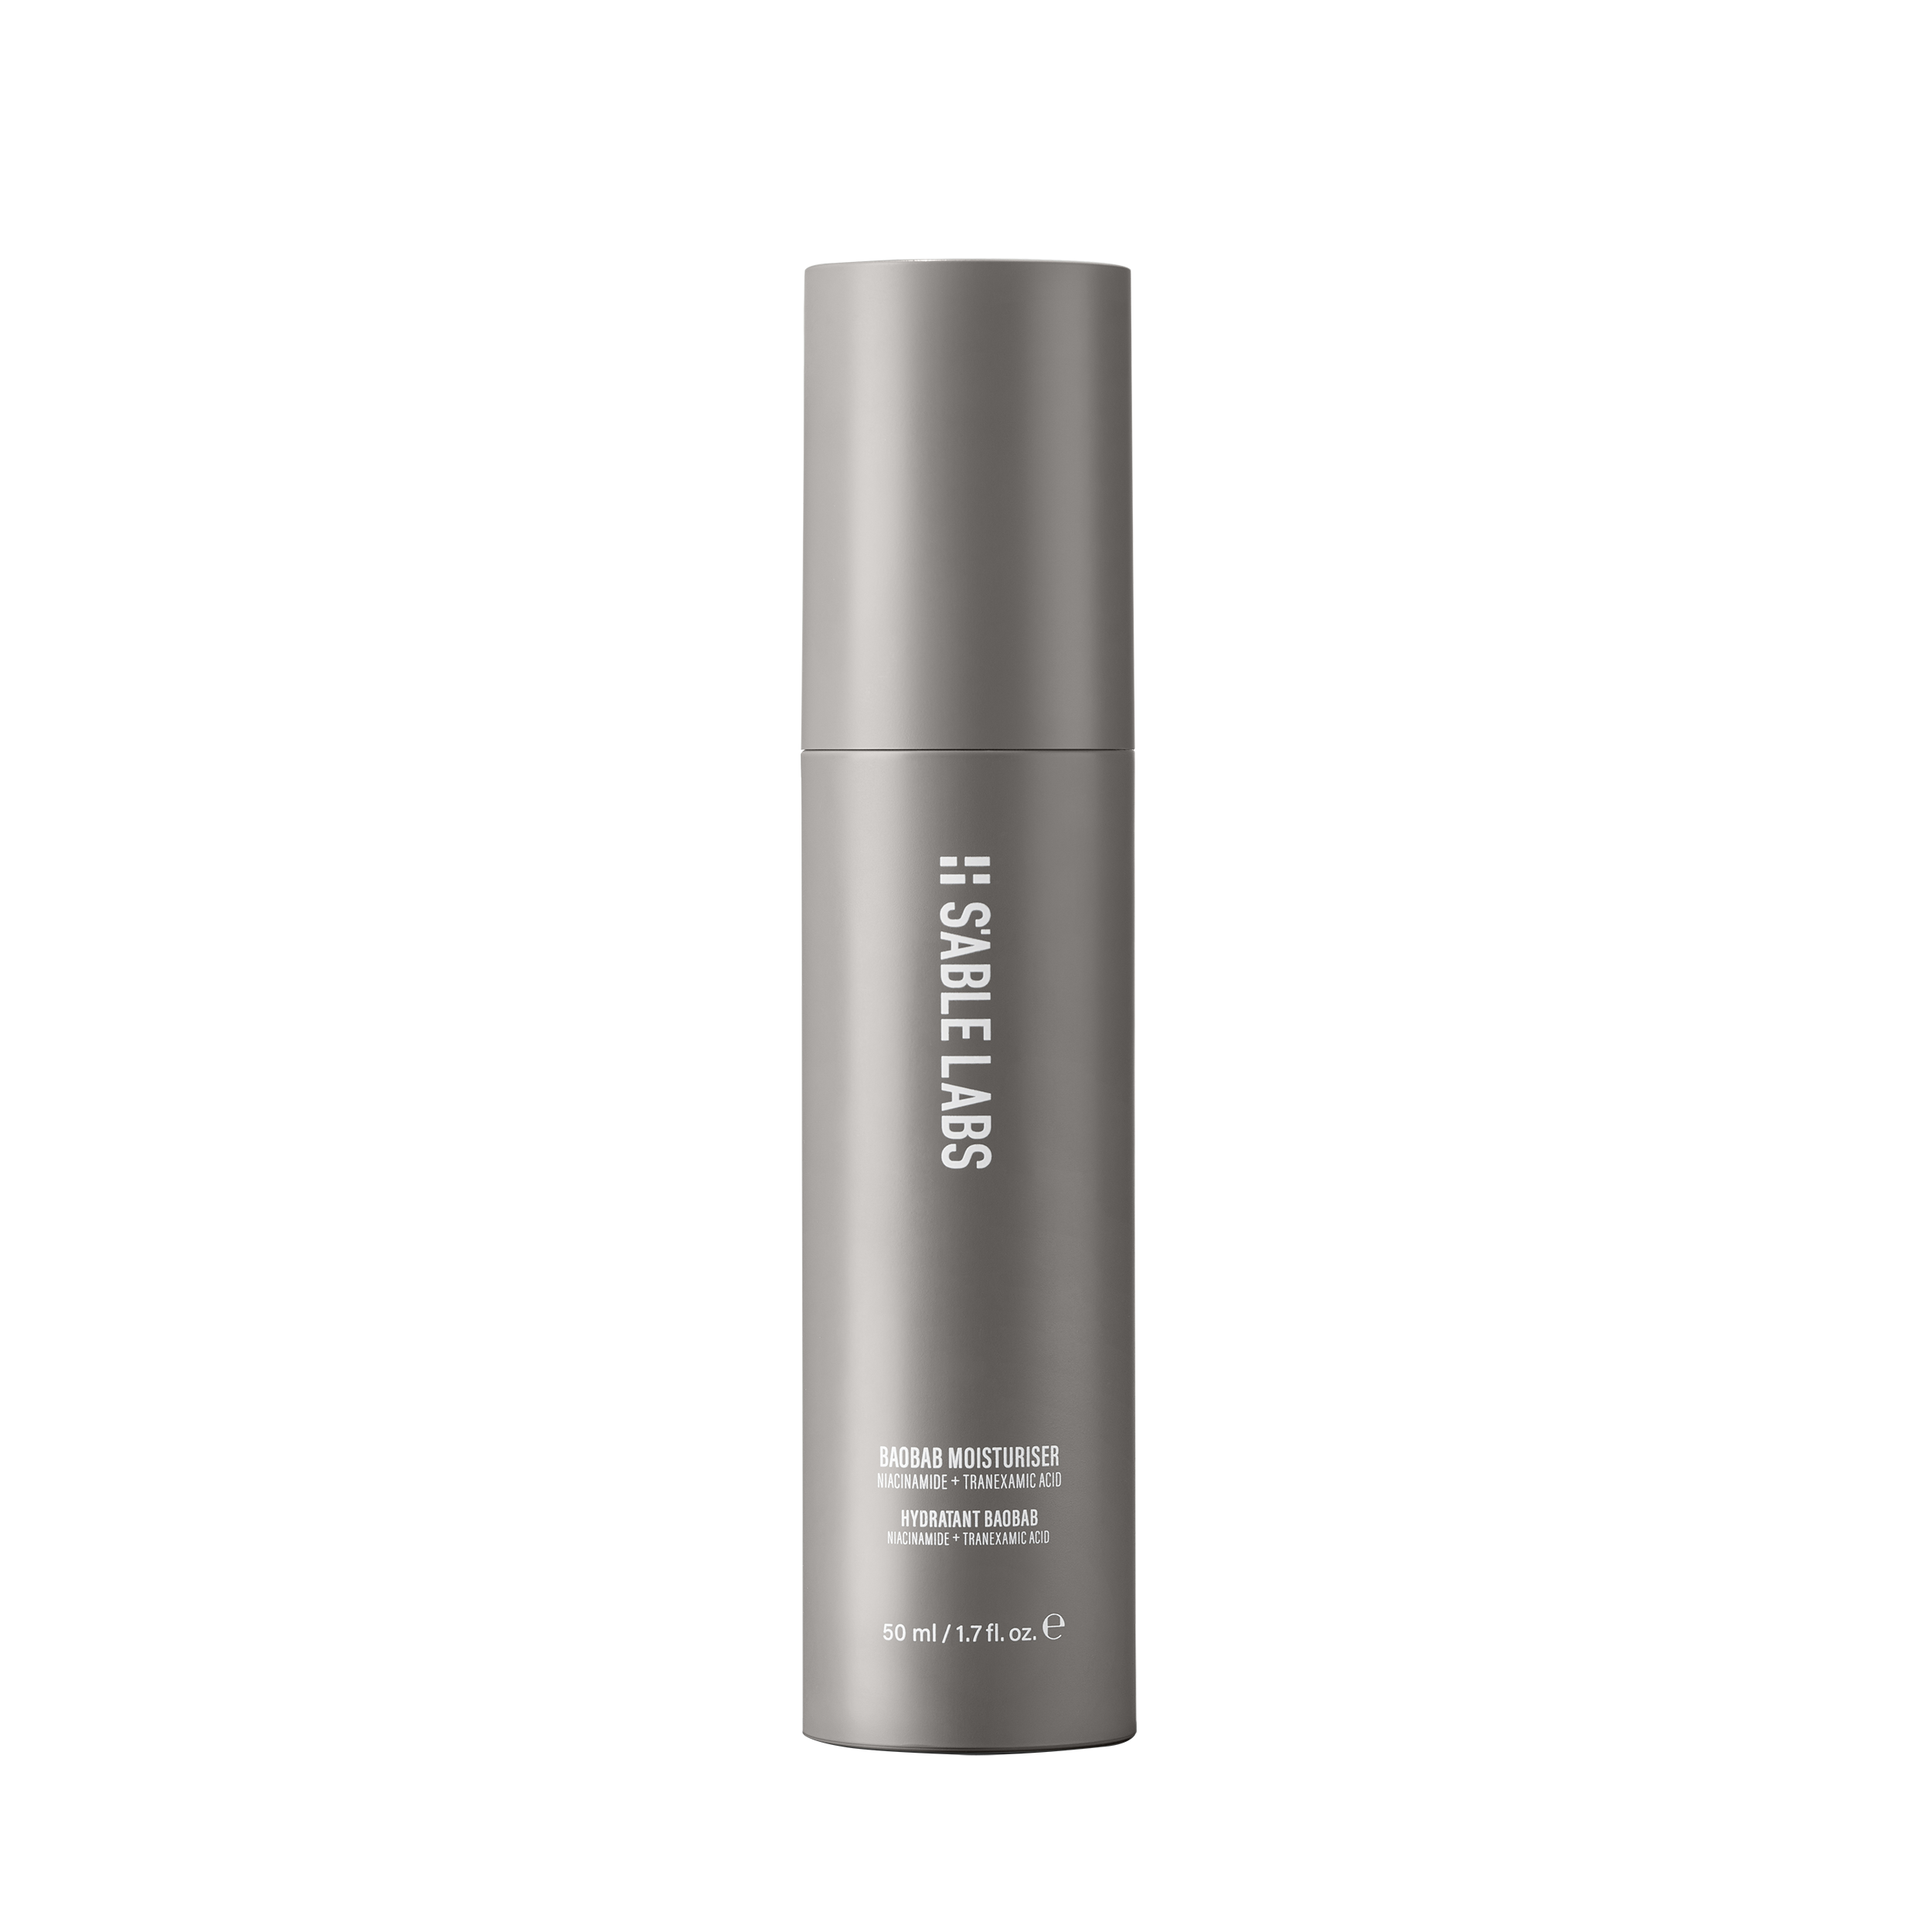 fast-absorbing moisturiser, improves skin tone and texture, Idris Elba, Sabrina Elba, Idris Elba skincare, Baobab Moisturiser 